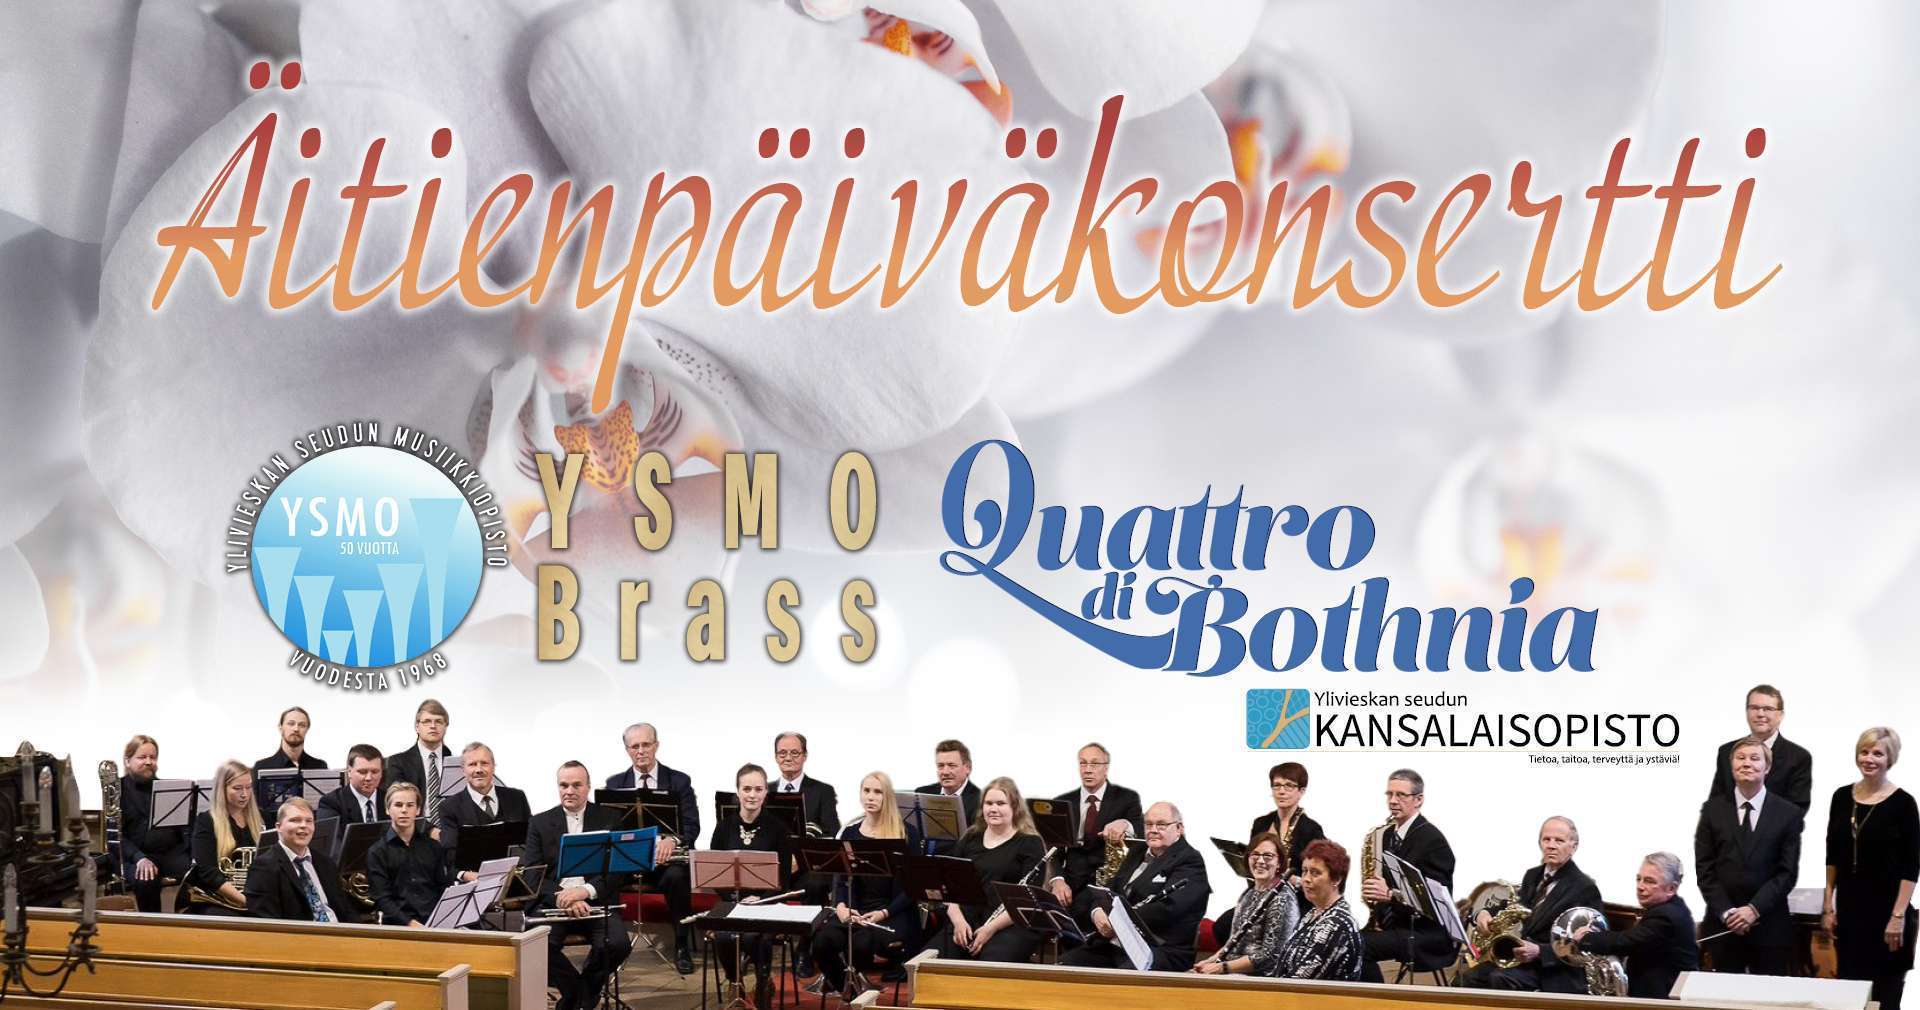 Äitienpäiväkonsertti - YSMO Brass & Quattro di Bothnia